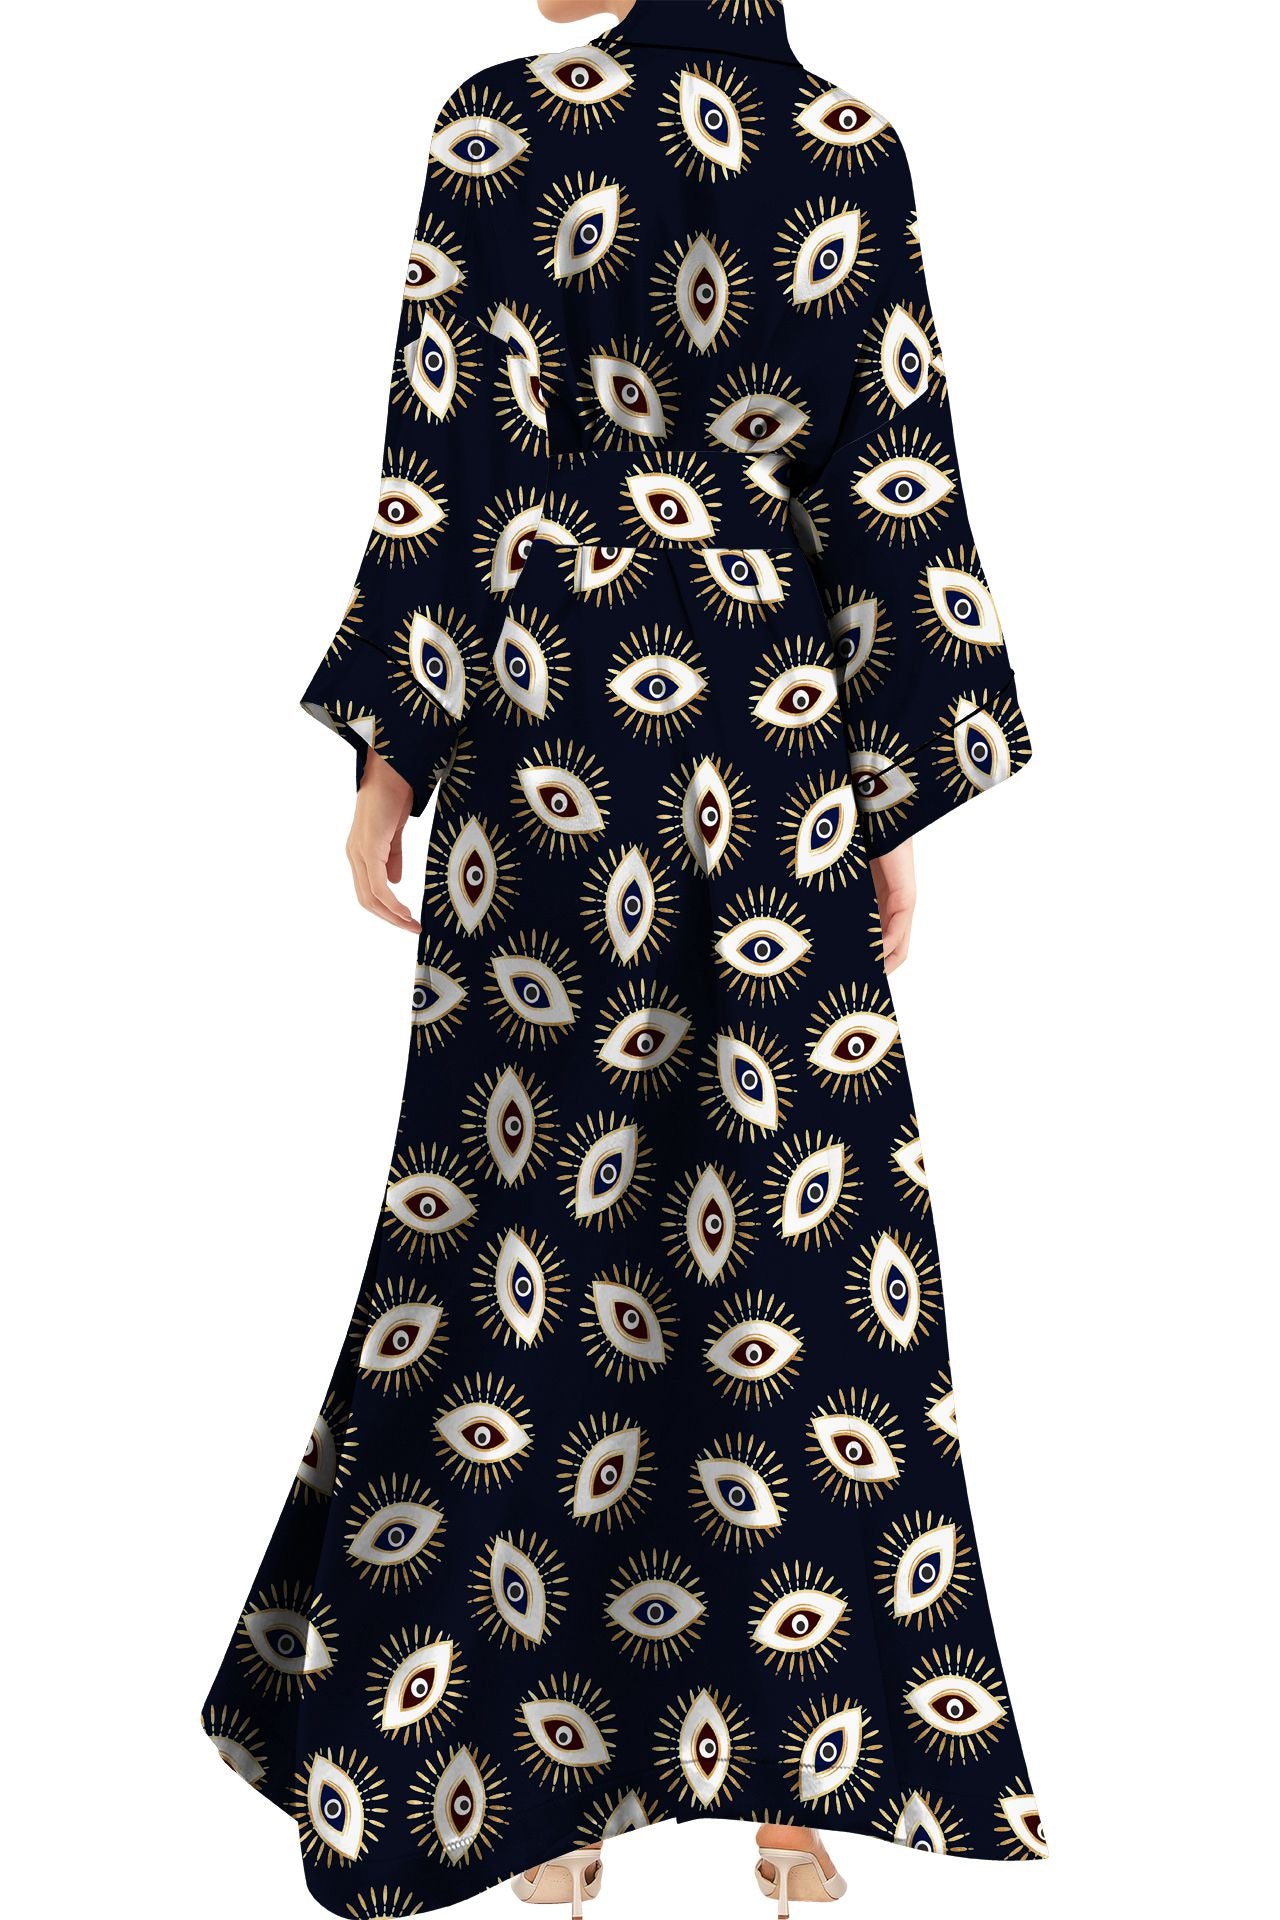 "evil eye dress" "Kyle X Shahida" "silk robes and kimonos" "luxury kimono"